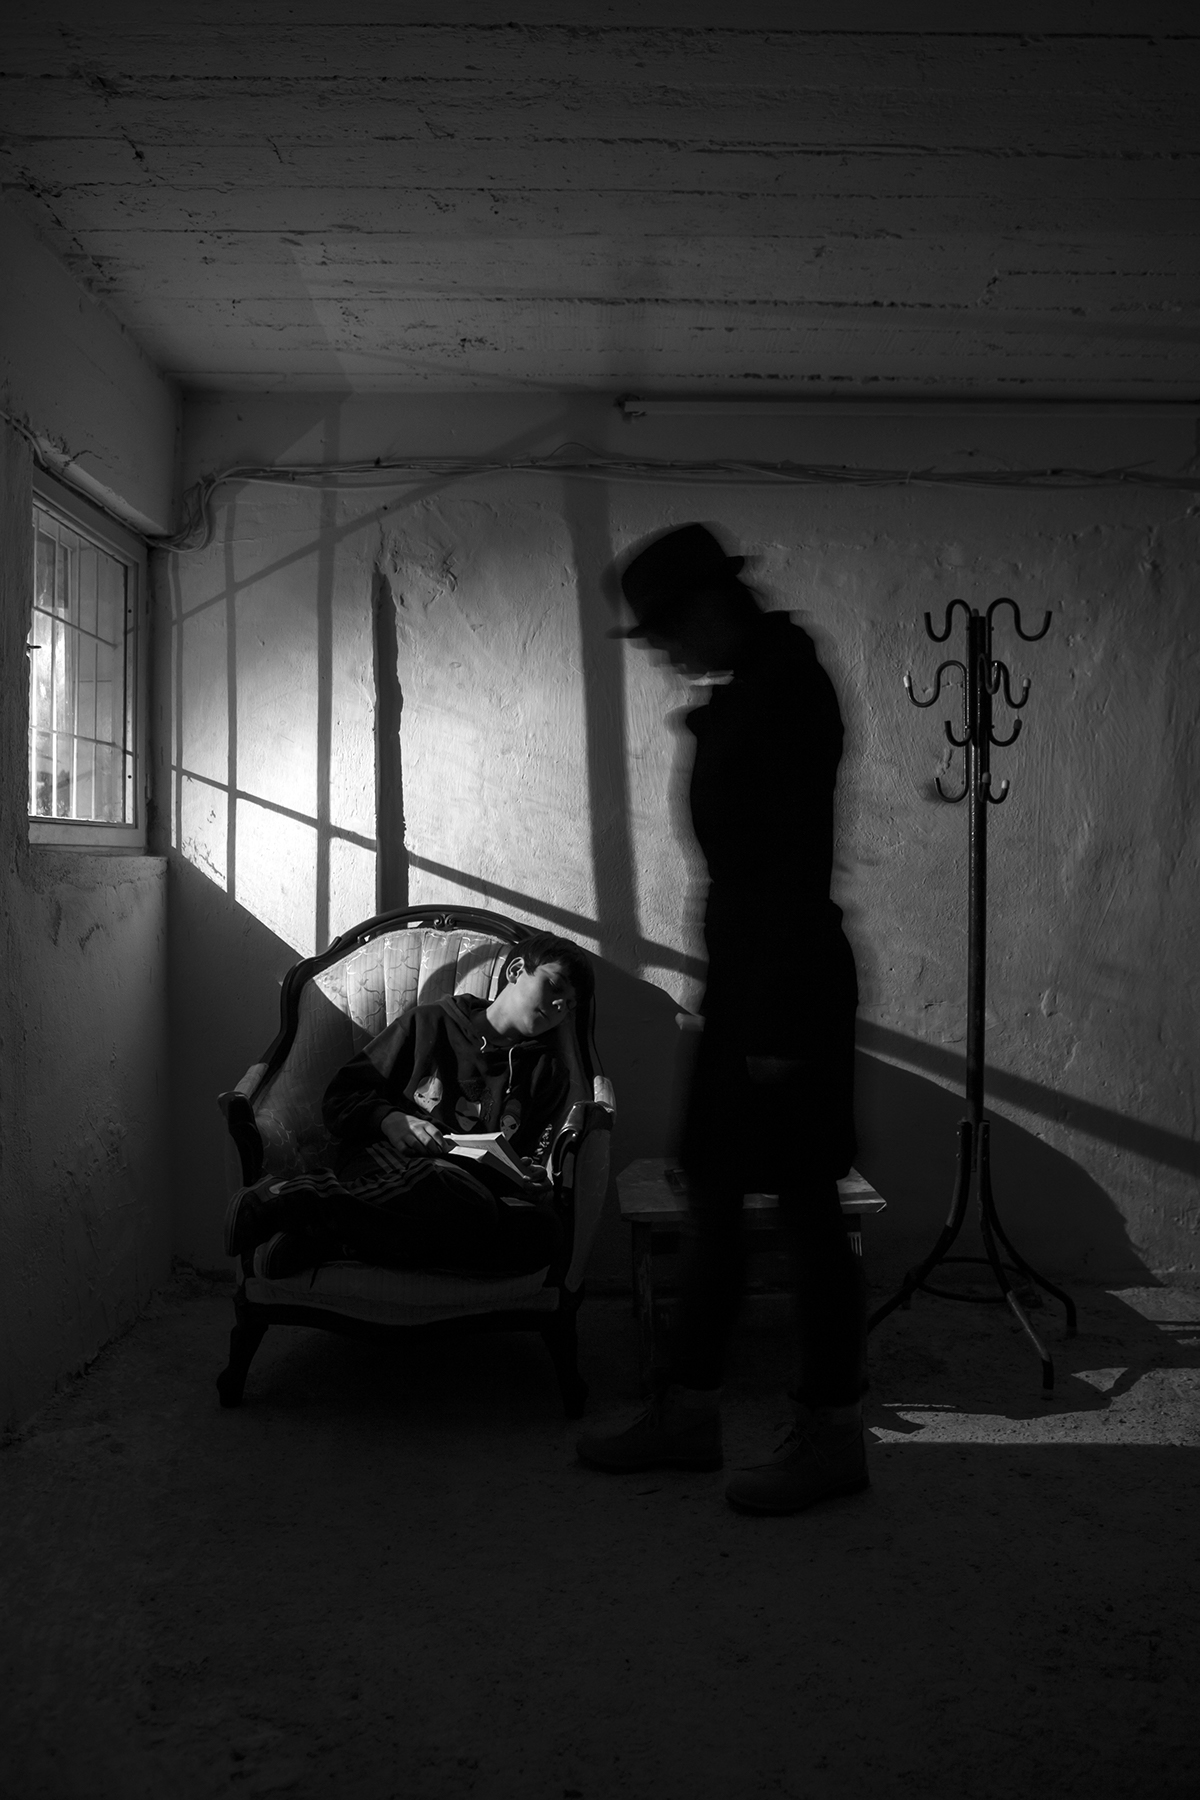 blackandwhite Silhouette series fear boogeyman darkness remake Duane Michals dark